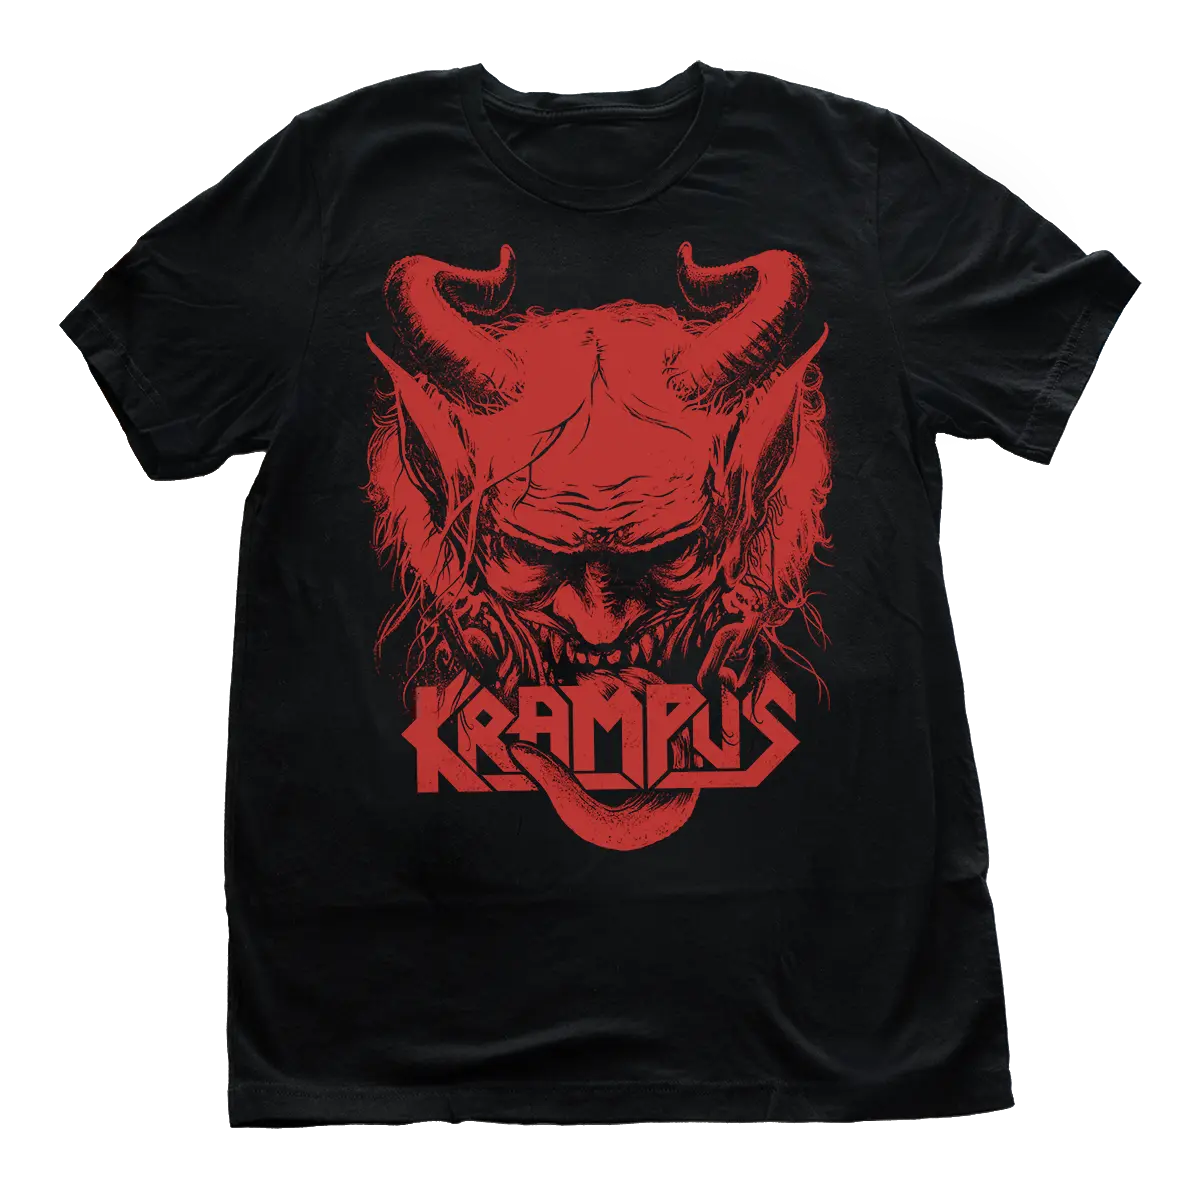 Krampus Metal Band T-Shirt